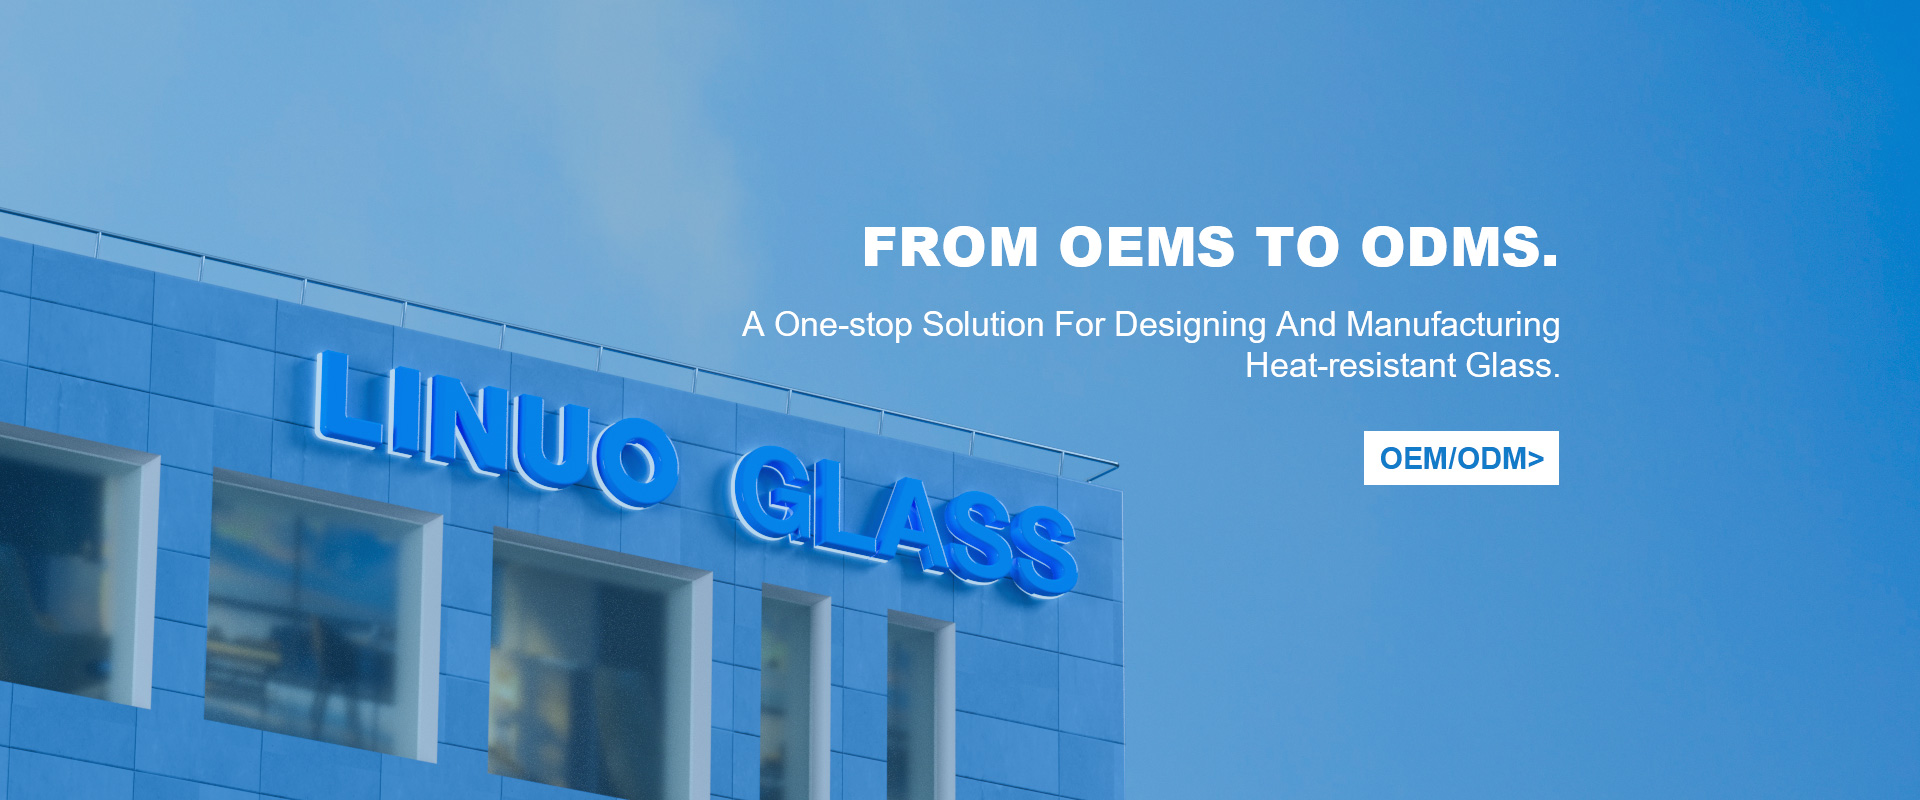 حل متكامل لتصميم وتصنيع الزجاج المقاوم للحرارة.